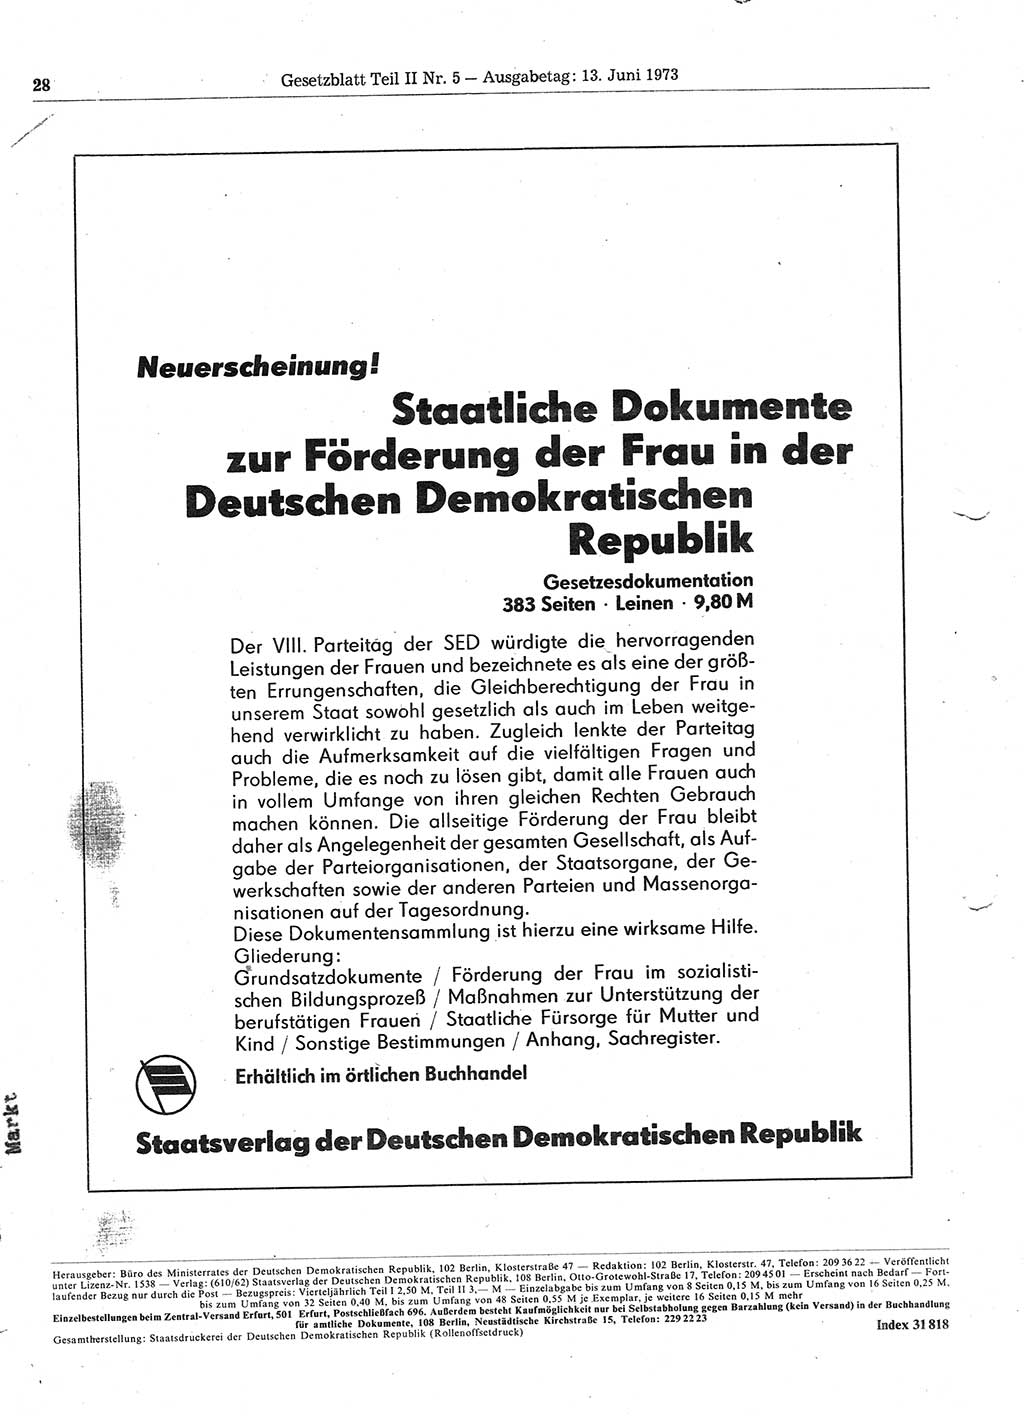 Gesetzblatt (GBl.) der Deutschen Demokratischen Republik (DDR) Teil ⅠⅠ 1973, Seite 28 (GBl. DDR ⅠⅠ 1973, S. 28)